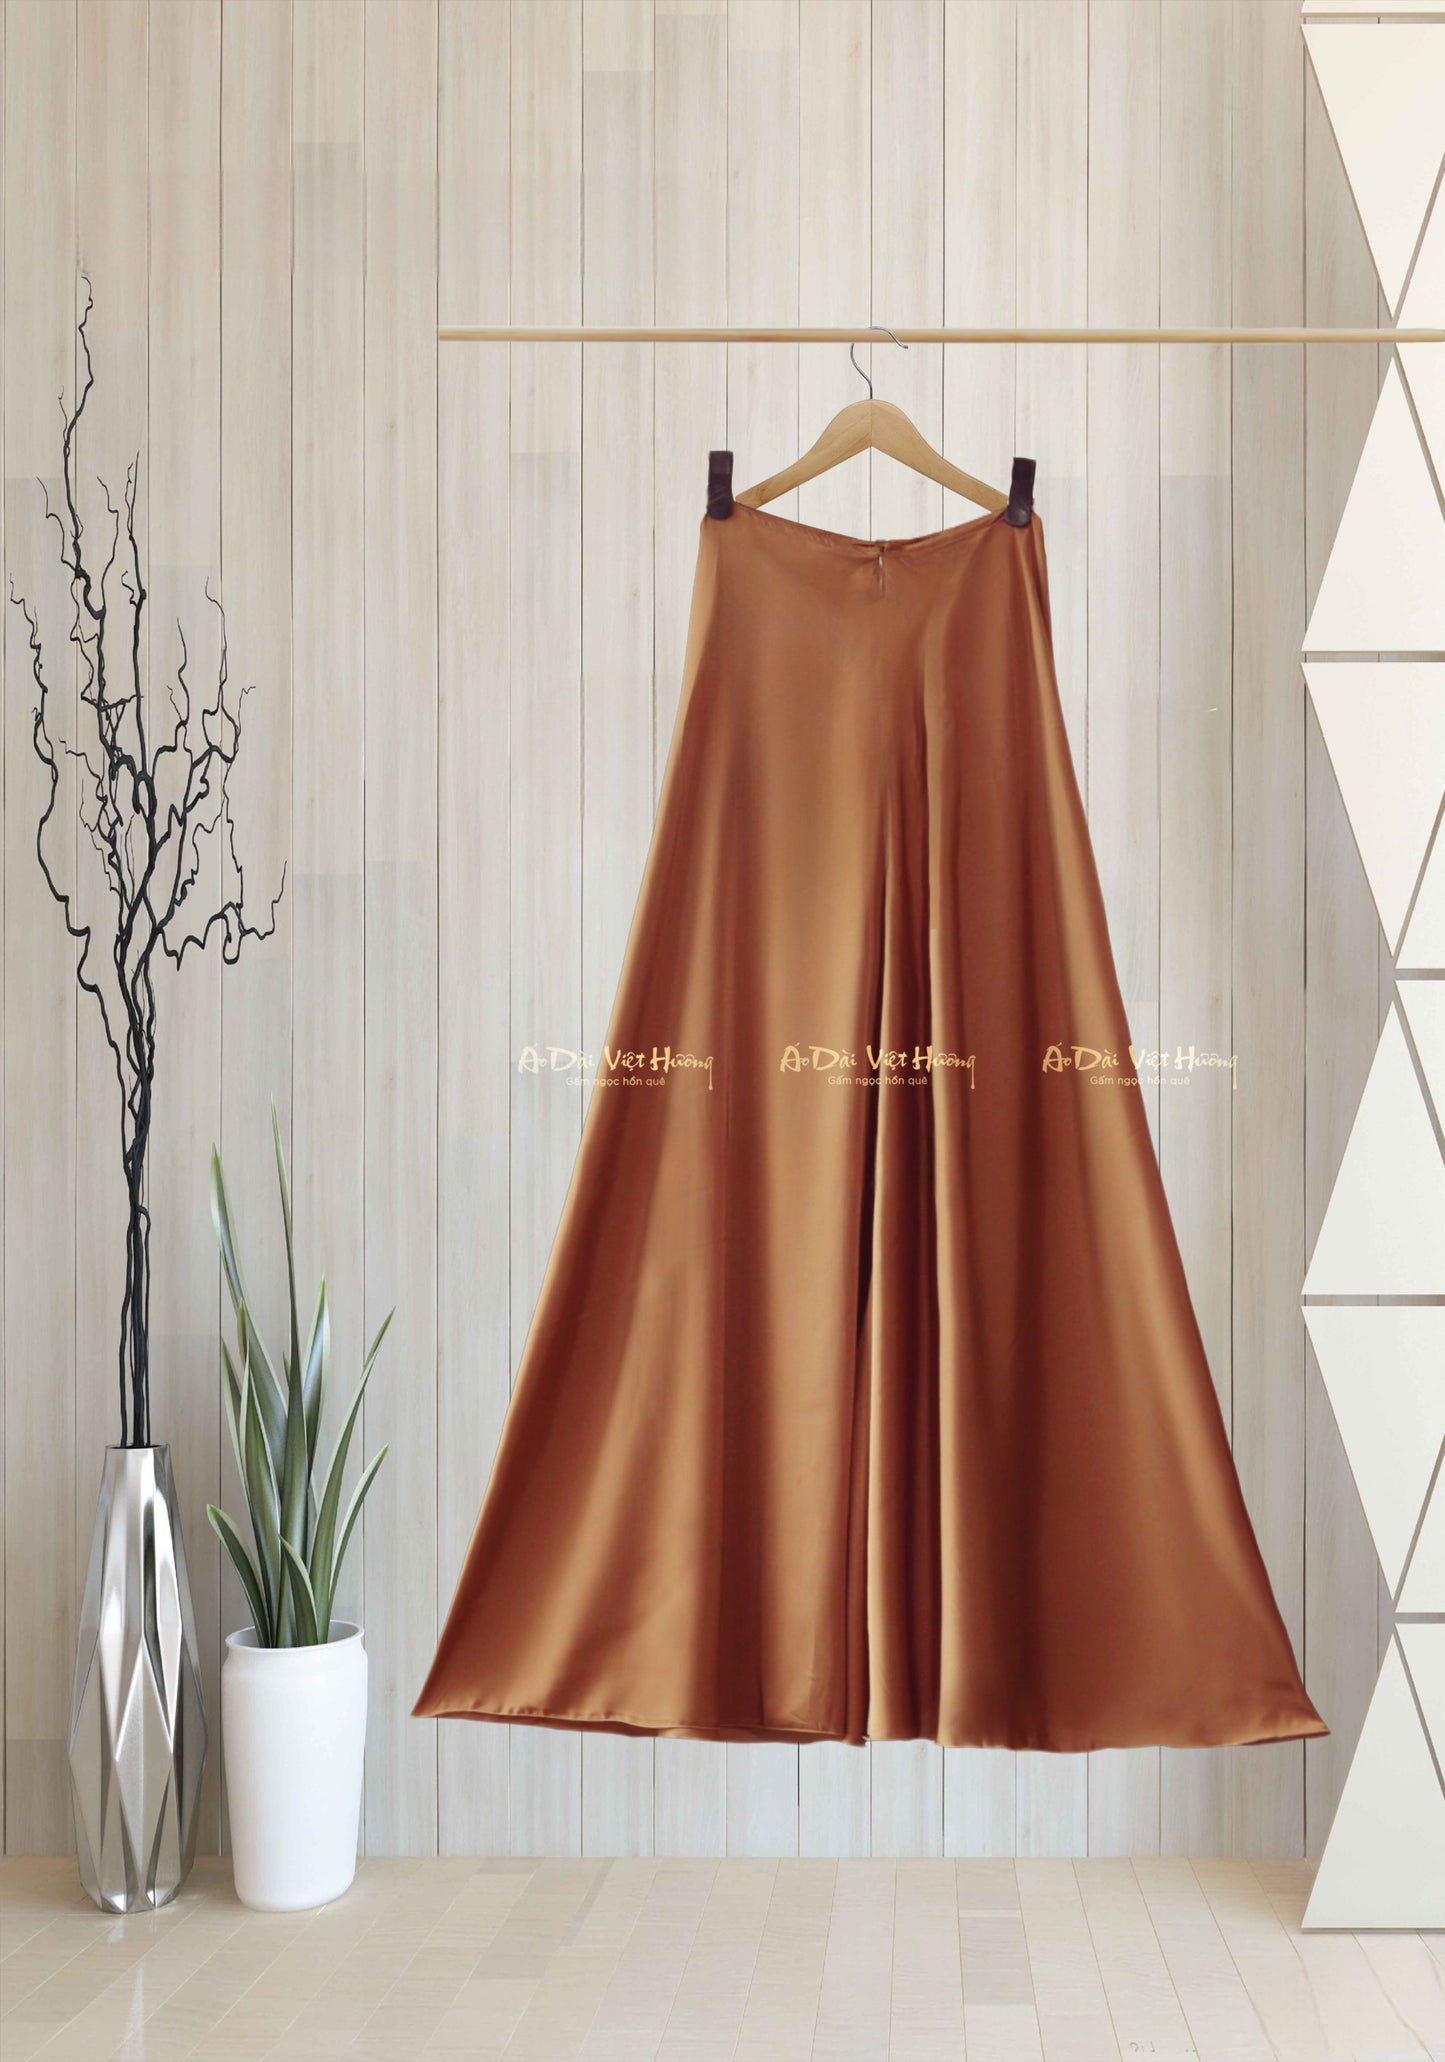 530 - Bright Copper Thái Tuấn Silk Skirt Pants (Quần Váy Ống Xéo Lụa Thái Tuấn Nâu Sáng)